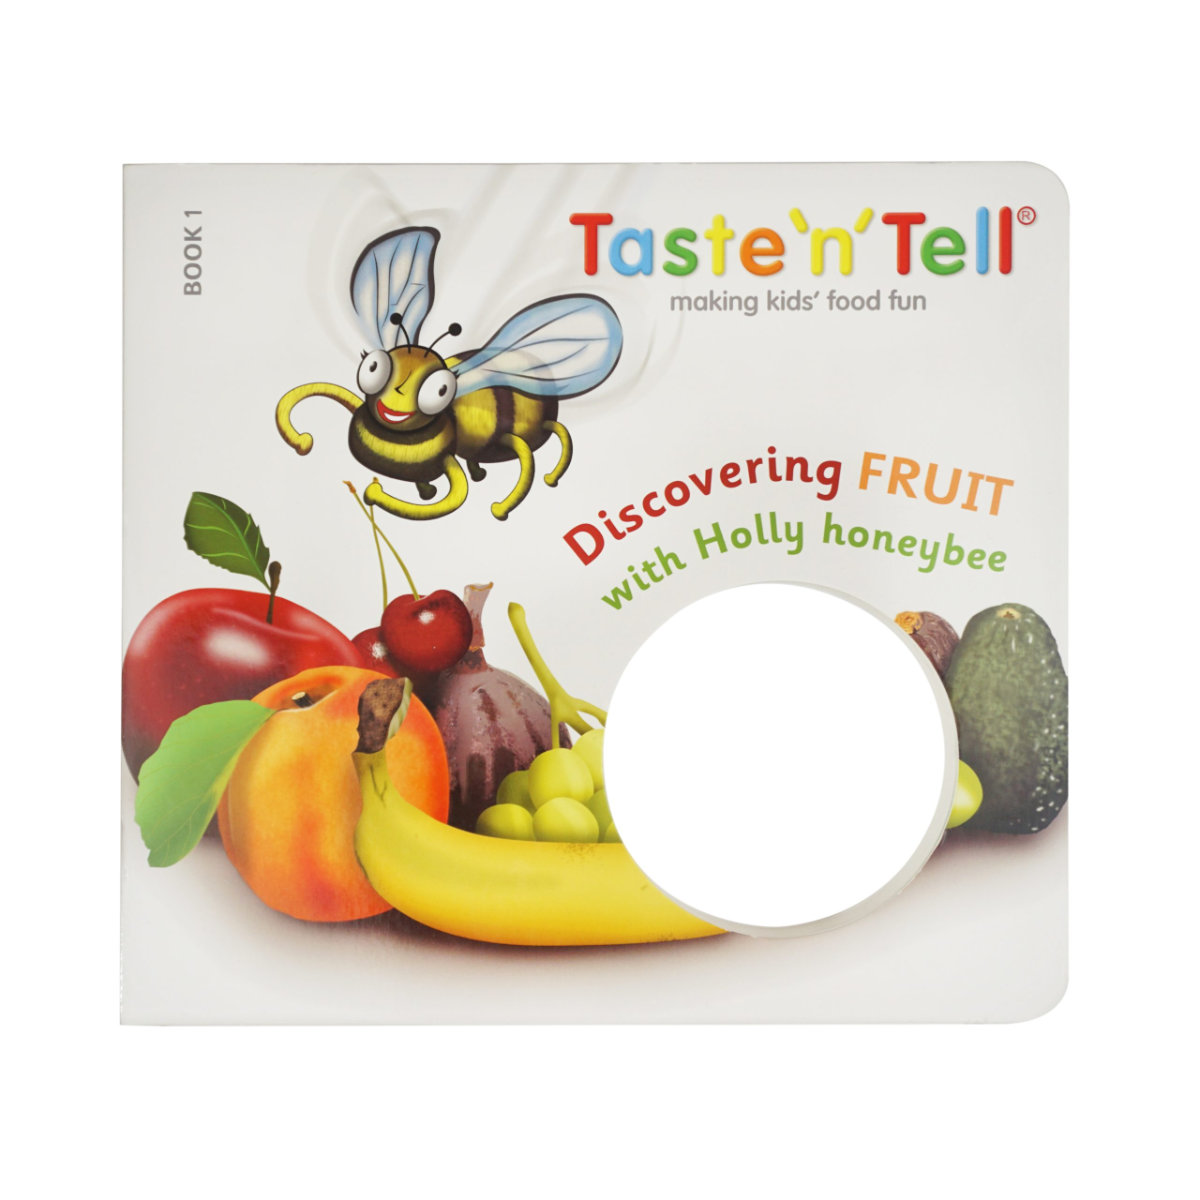 Taste'n'Tell Discovering Fruit withHolly Honeybee